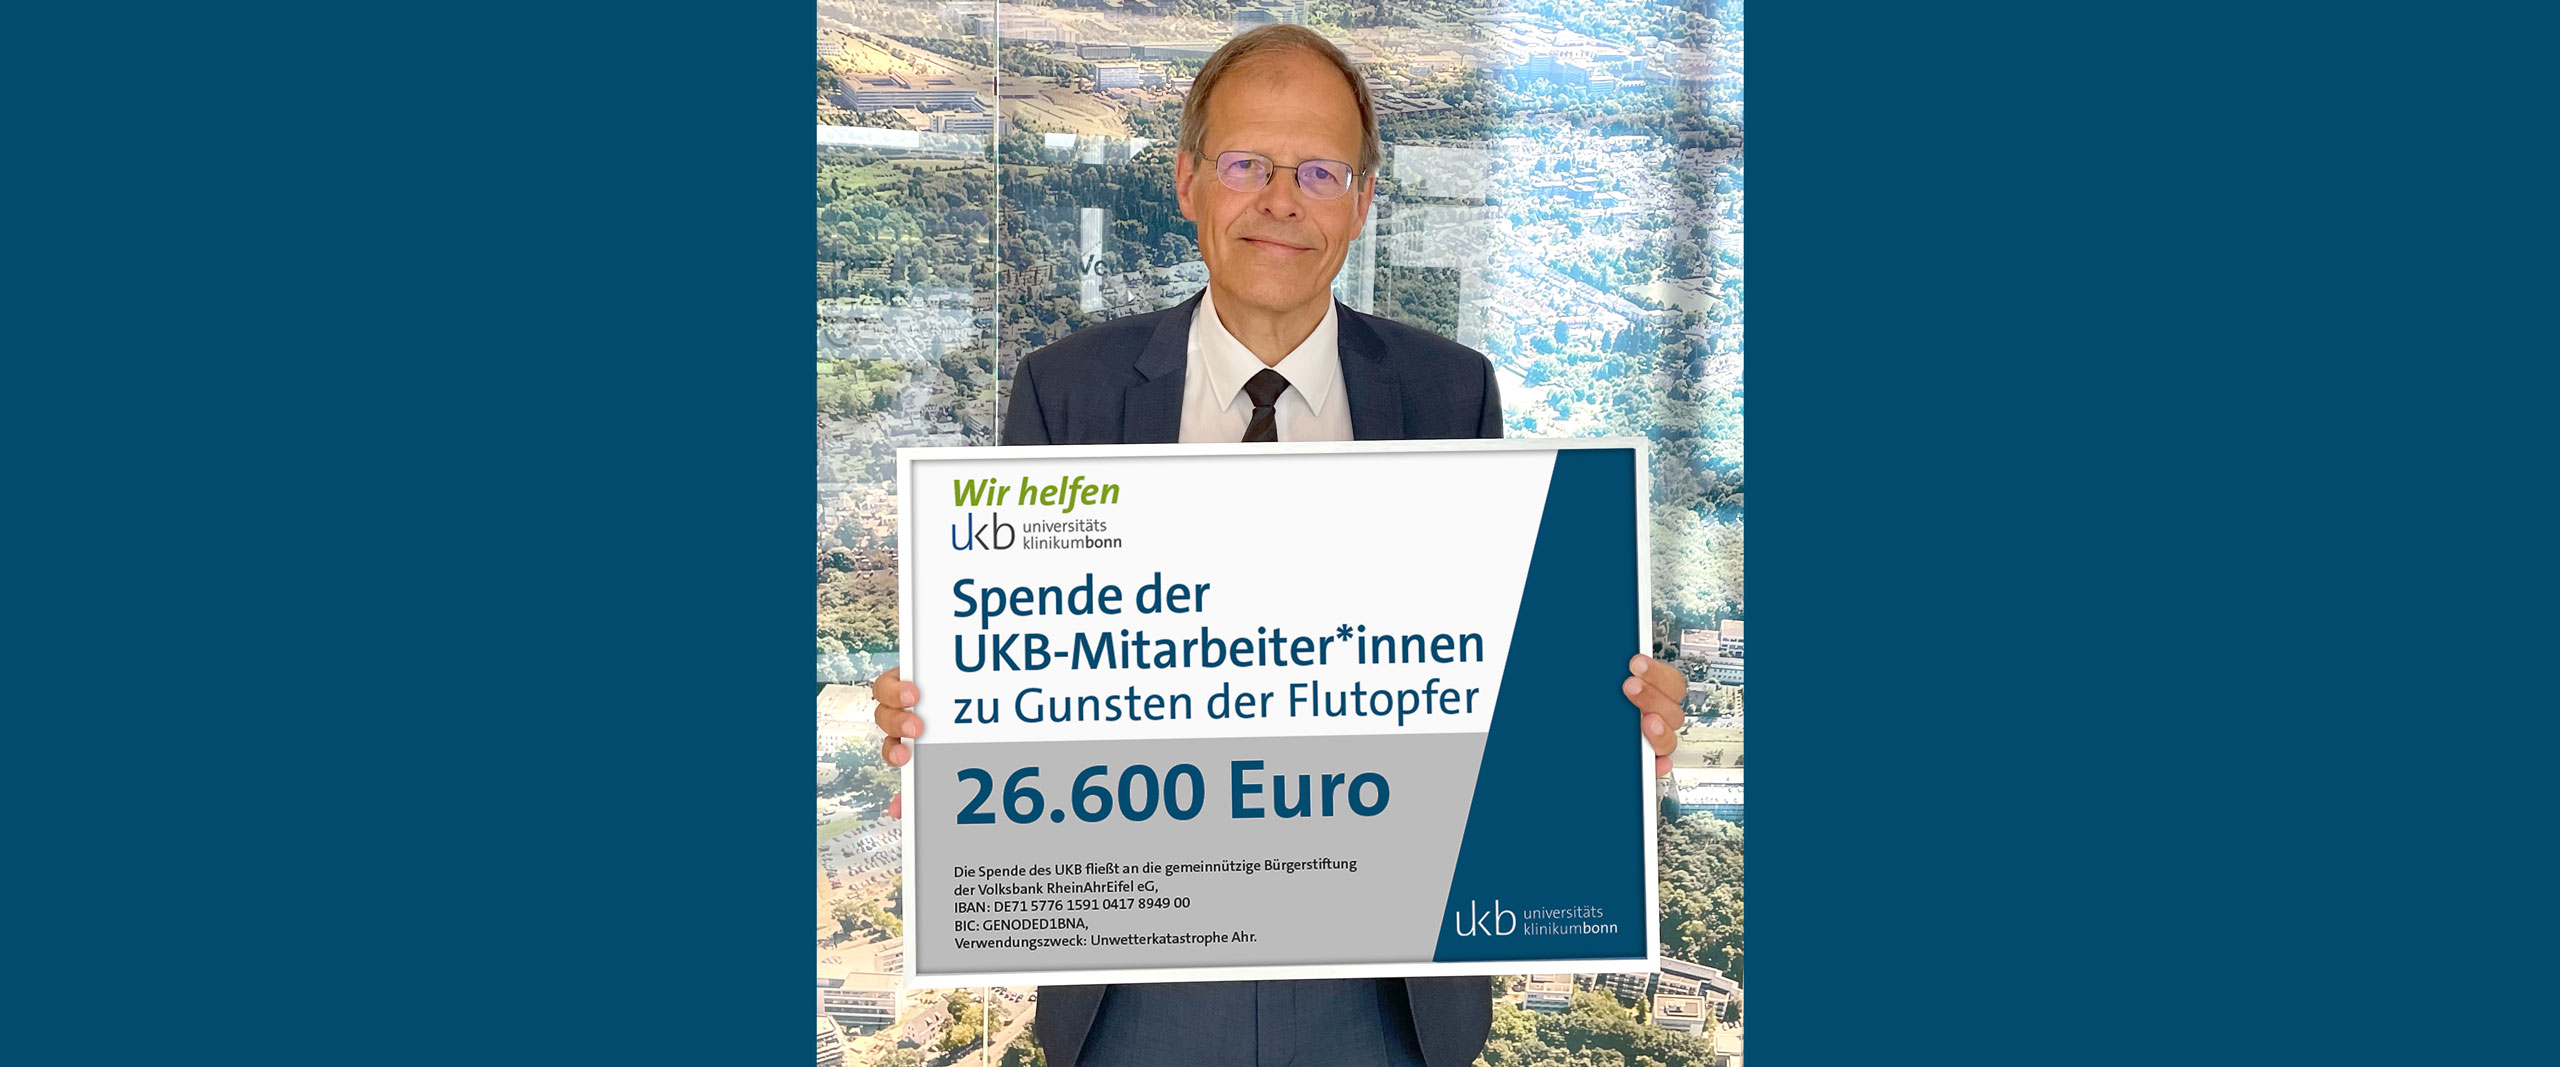 Universitätsklinikum Bonn (UKB) spendet 26.600 Euro für die Opfer der Hochwasserkatastrophe